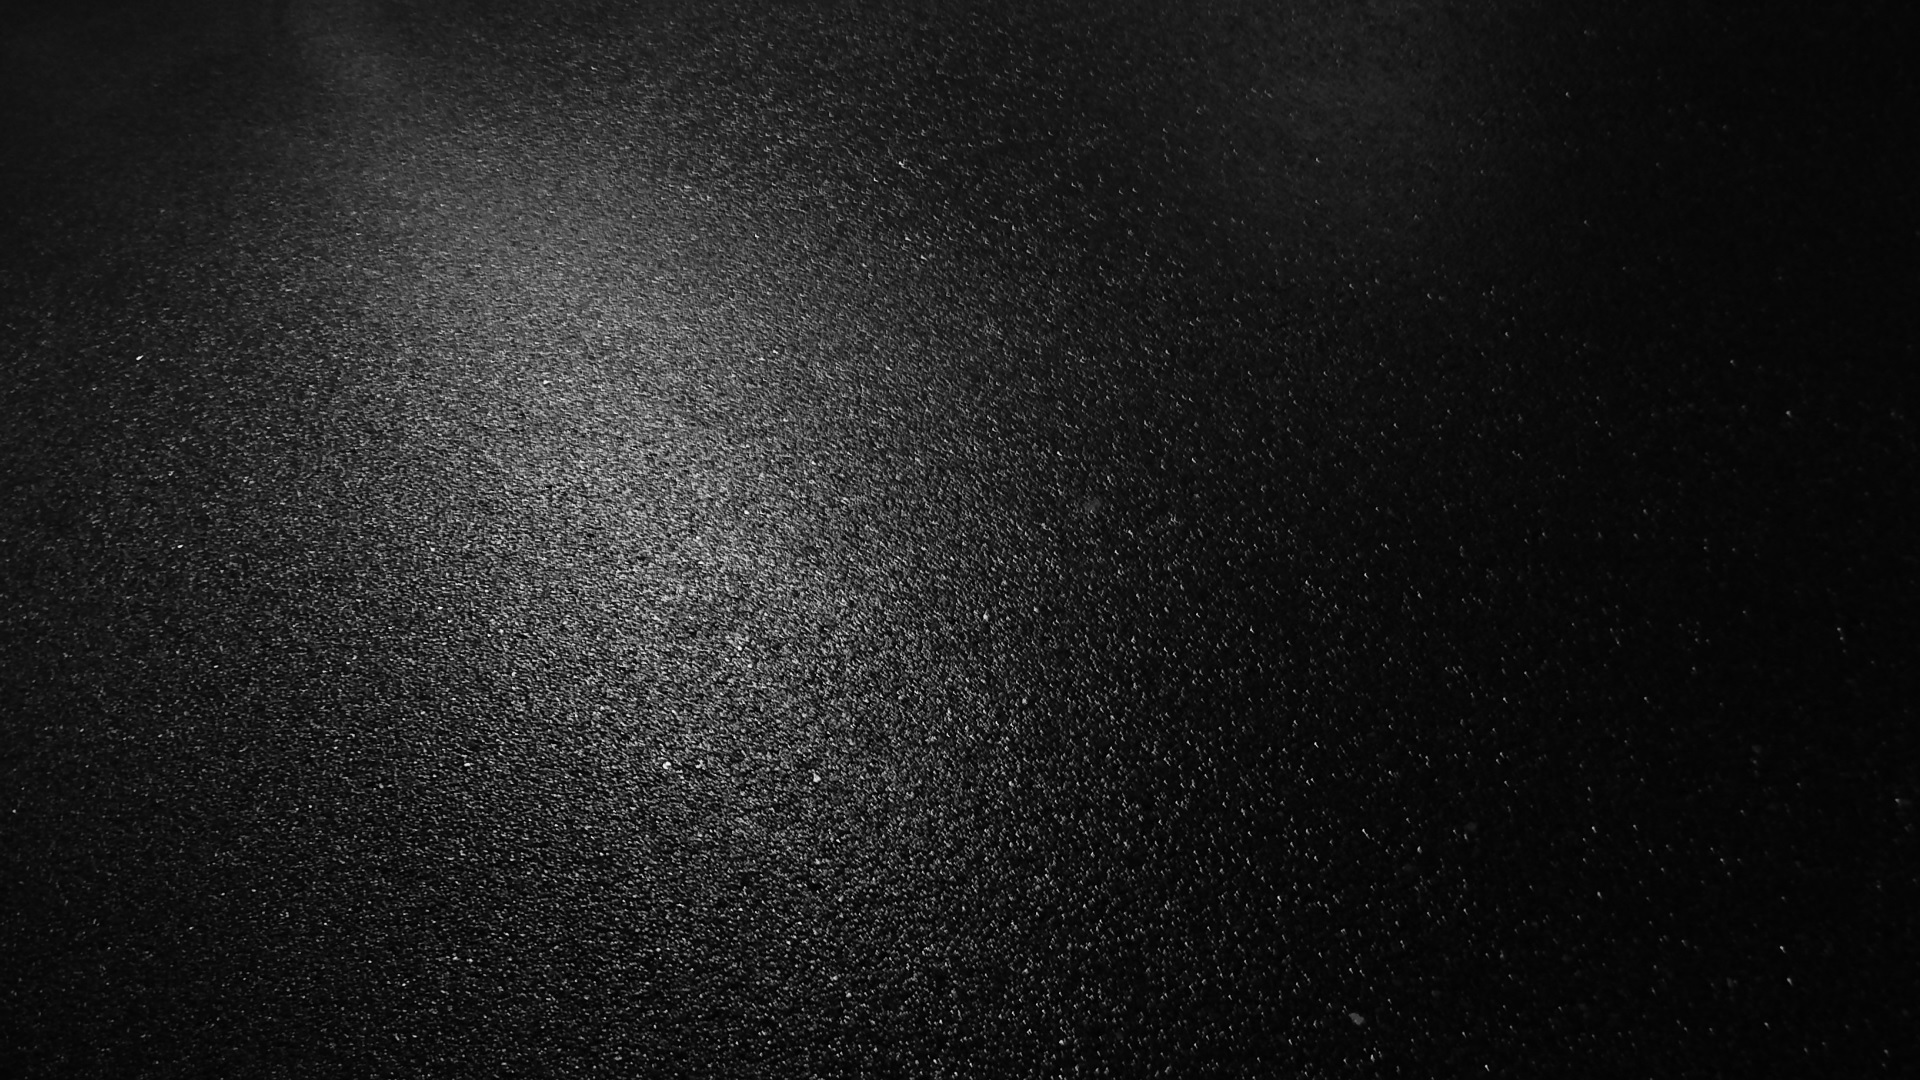 tapete negro,schwarz,dunkelheit,himmel,schwarz und weiß,fotografie